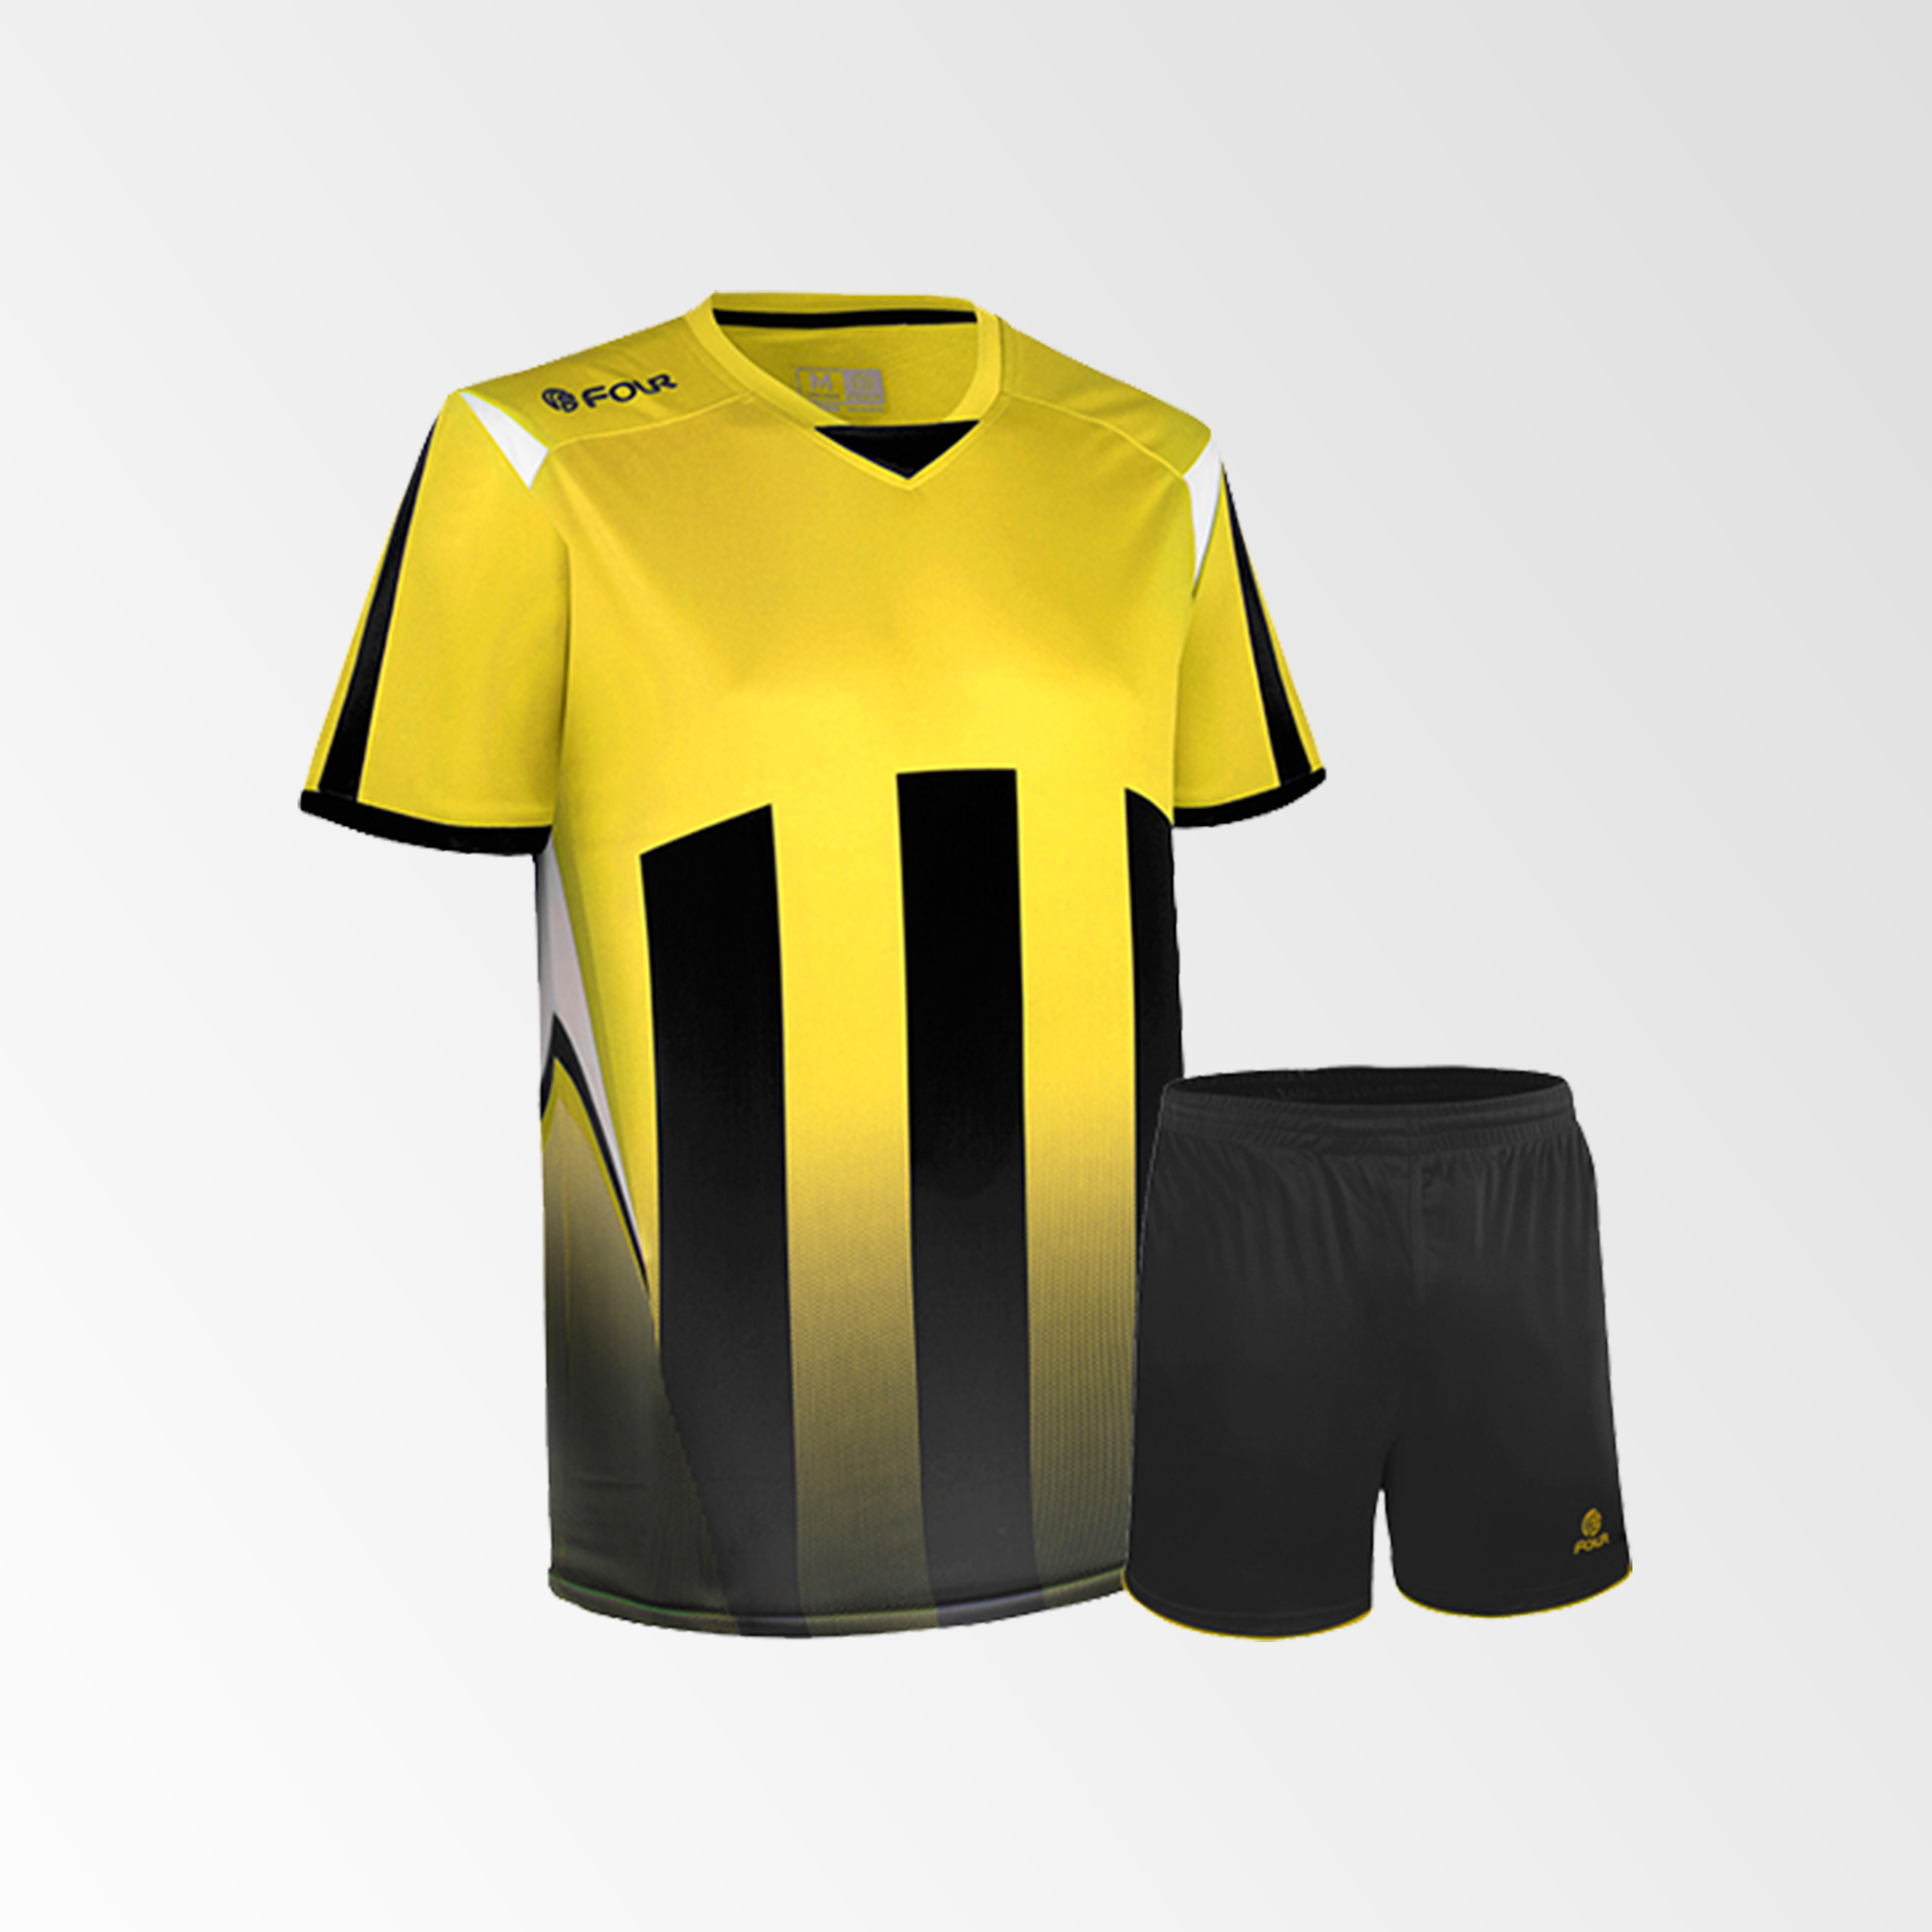 Camiseta de Futbol y Short Modelo Watford Amarillo Blanco Negro – Tienda  Four